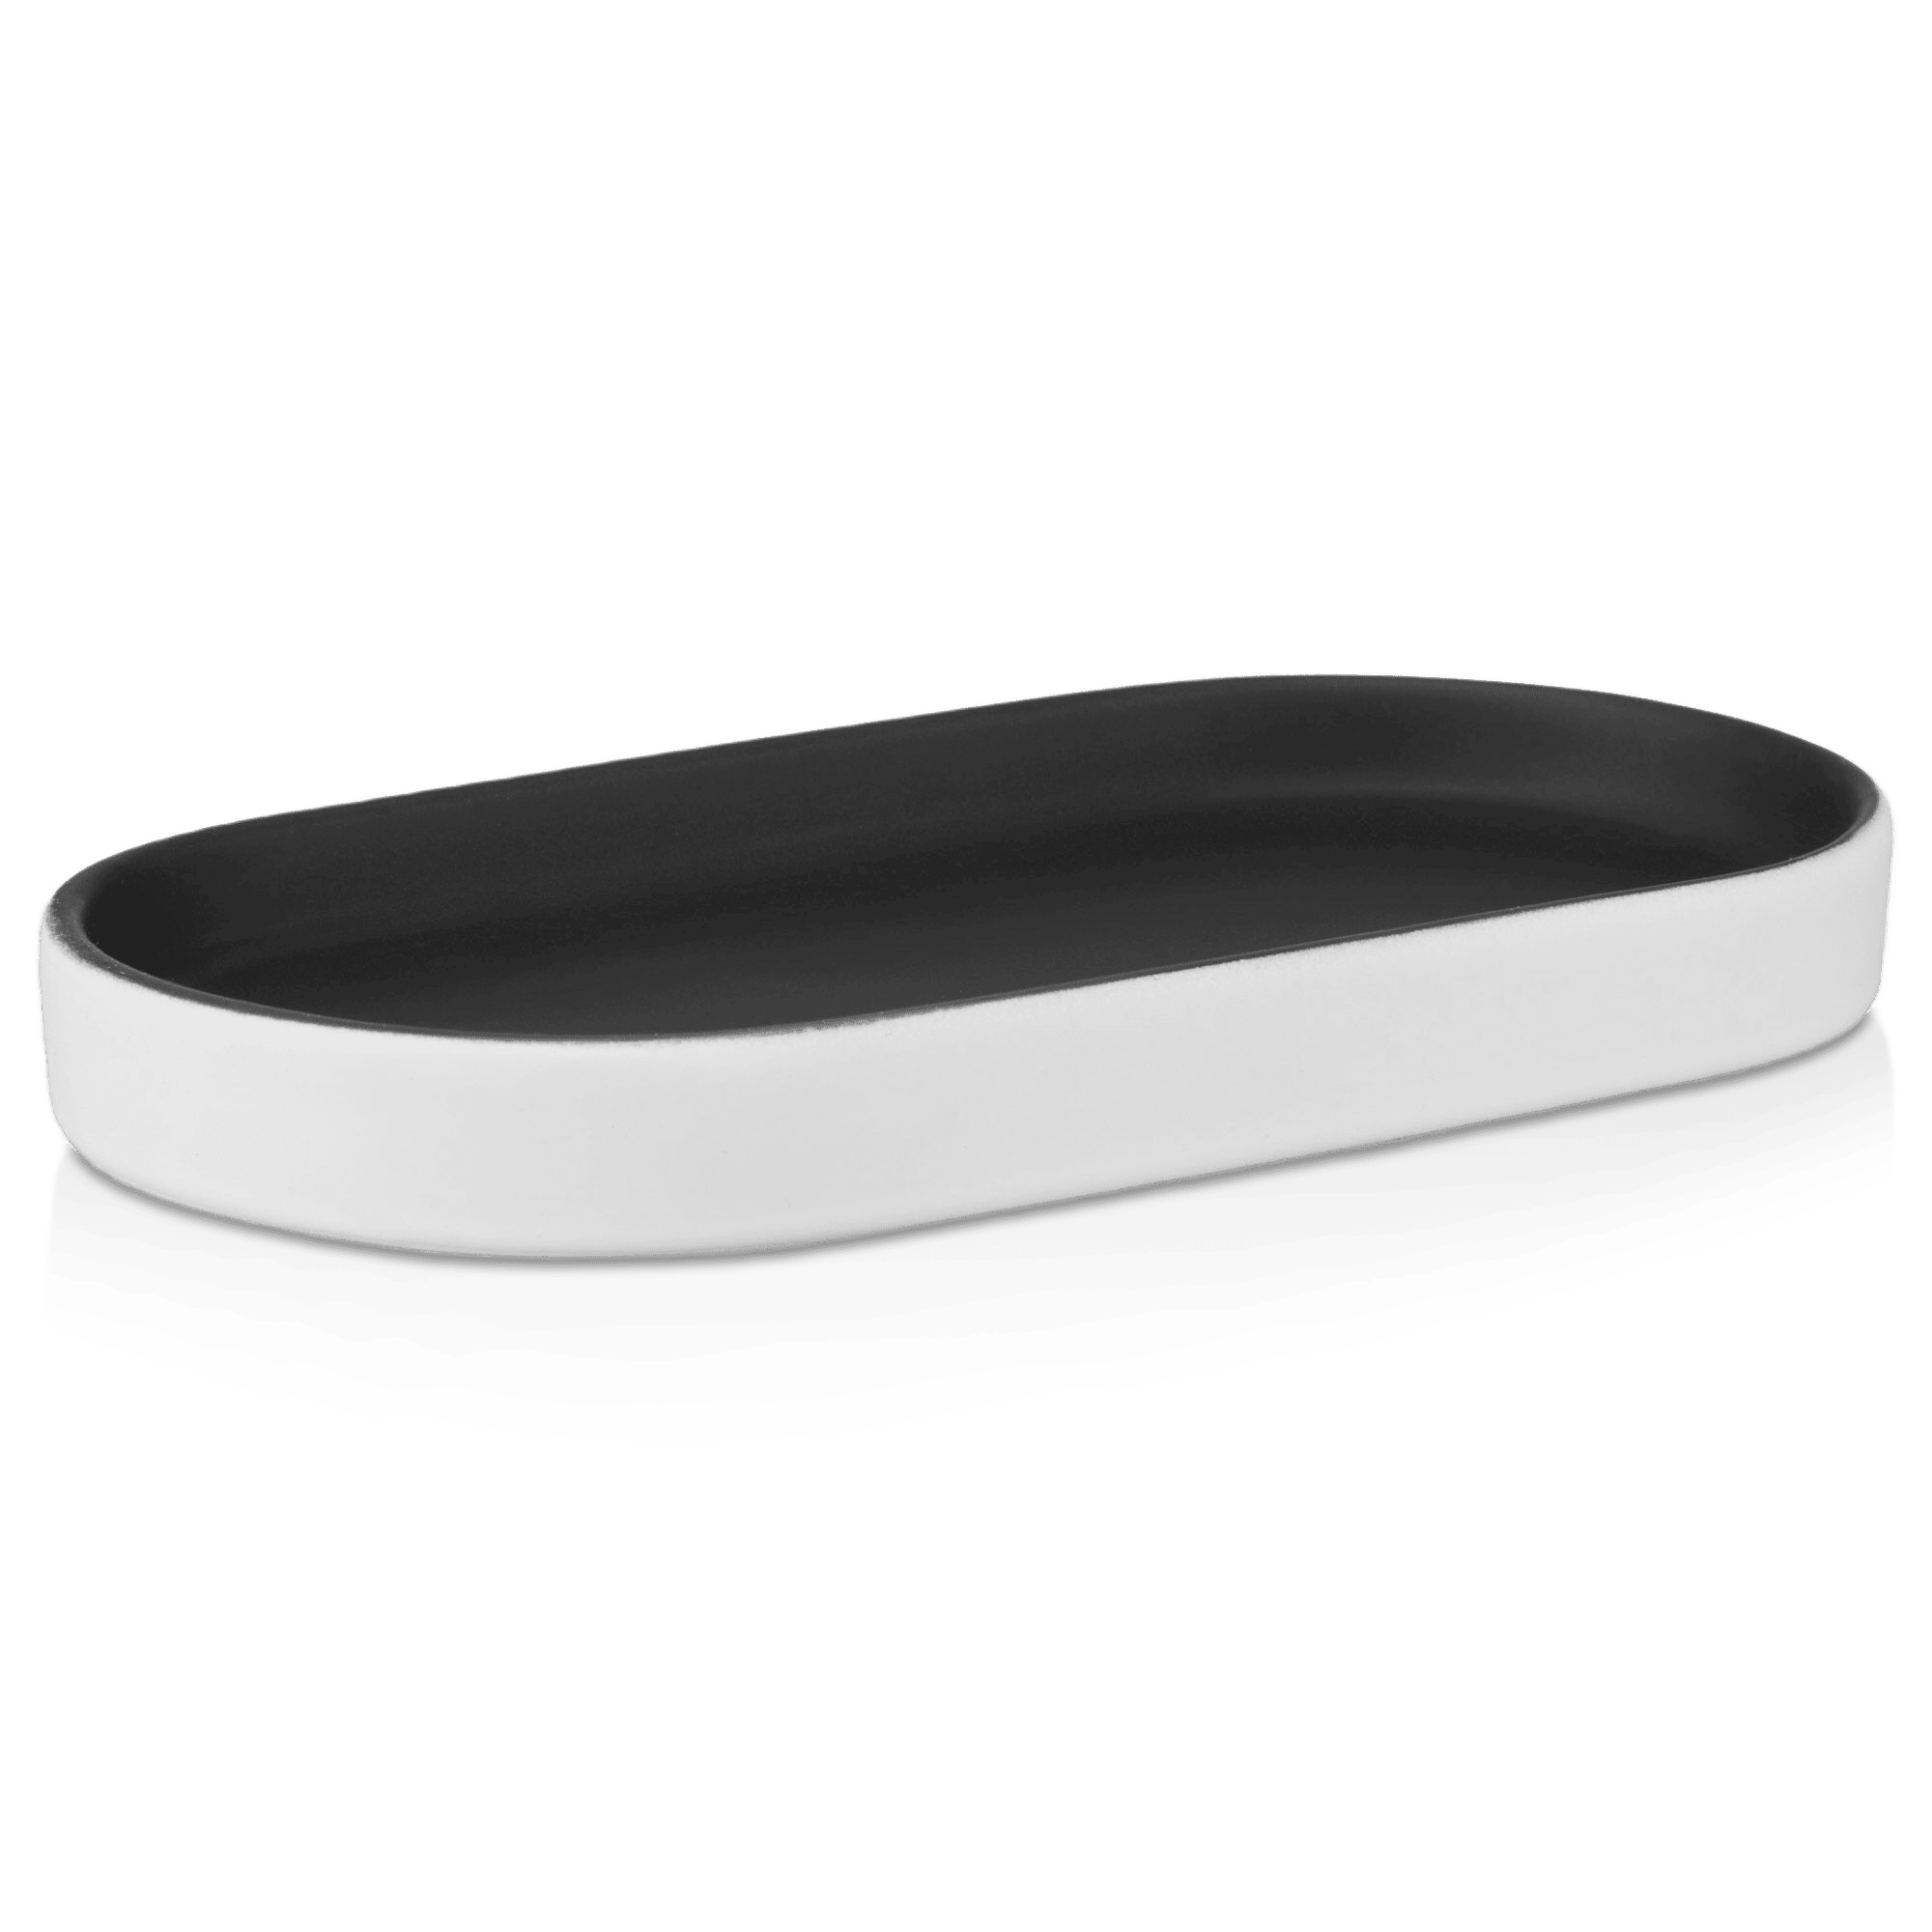 Plateau oval en céramique noire et blanche avec fini en caoutchouc